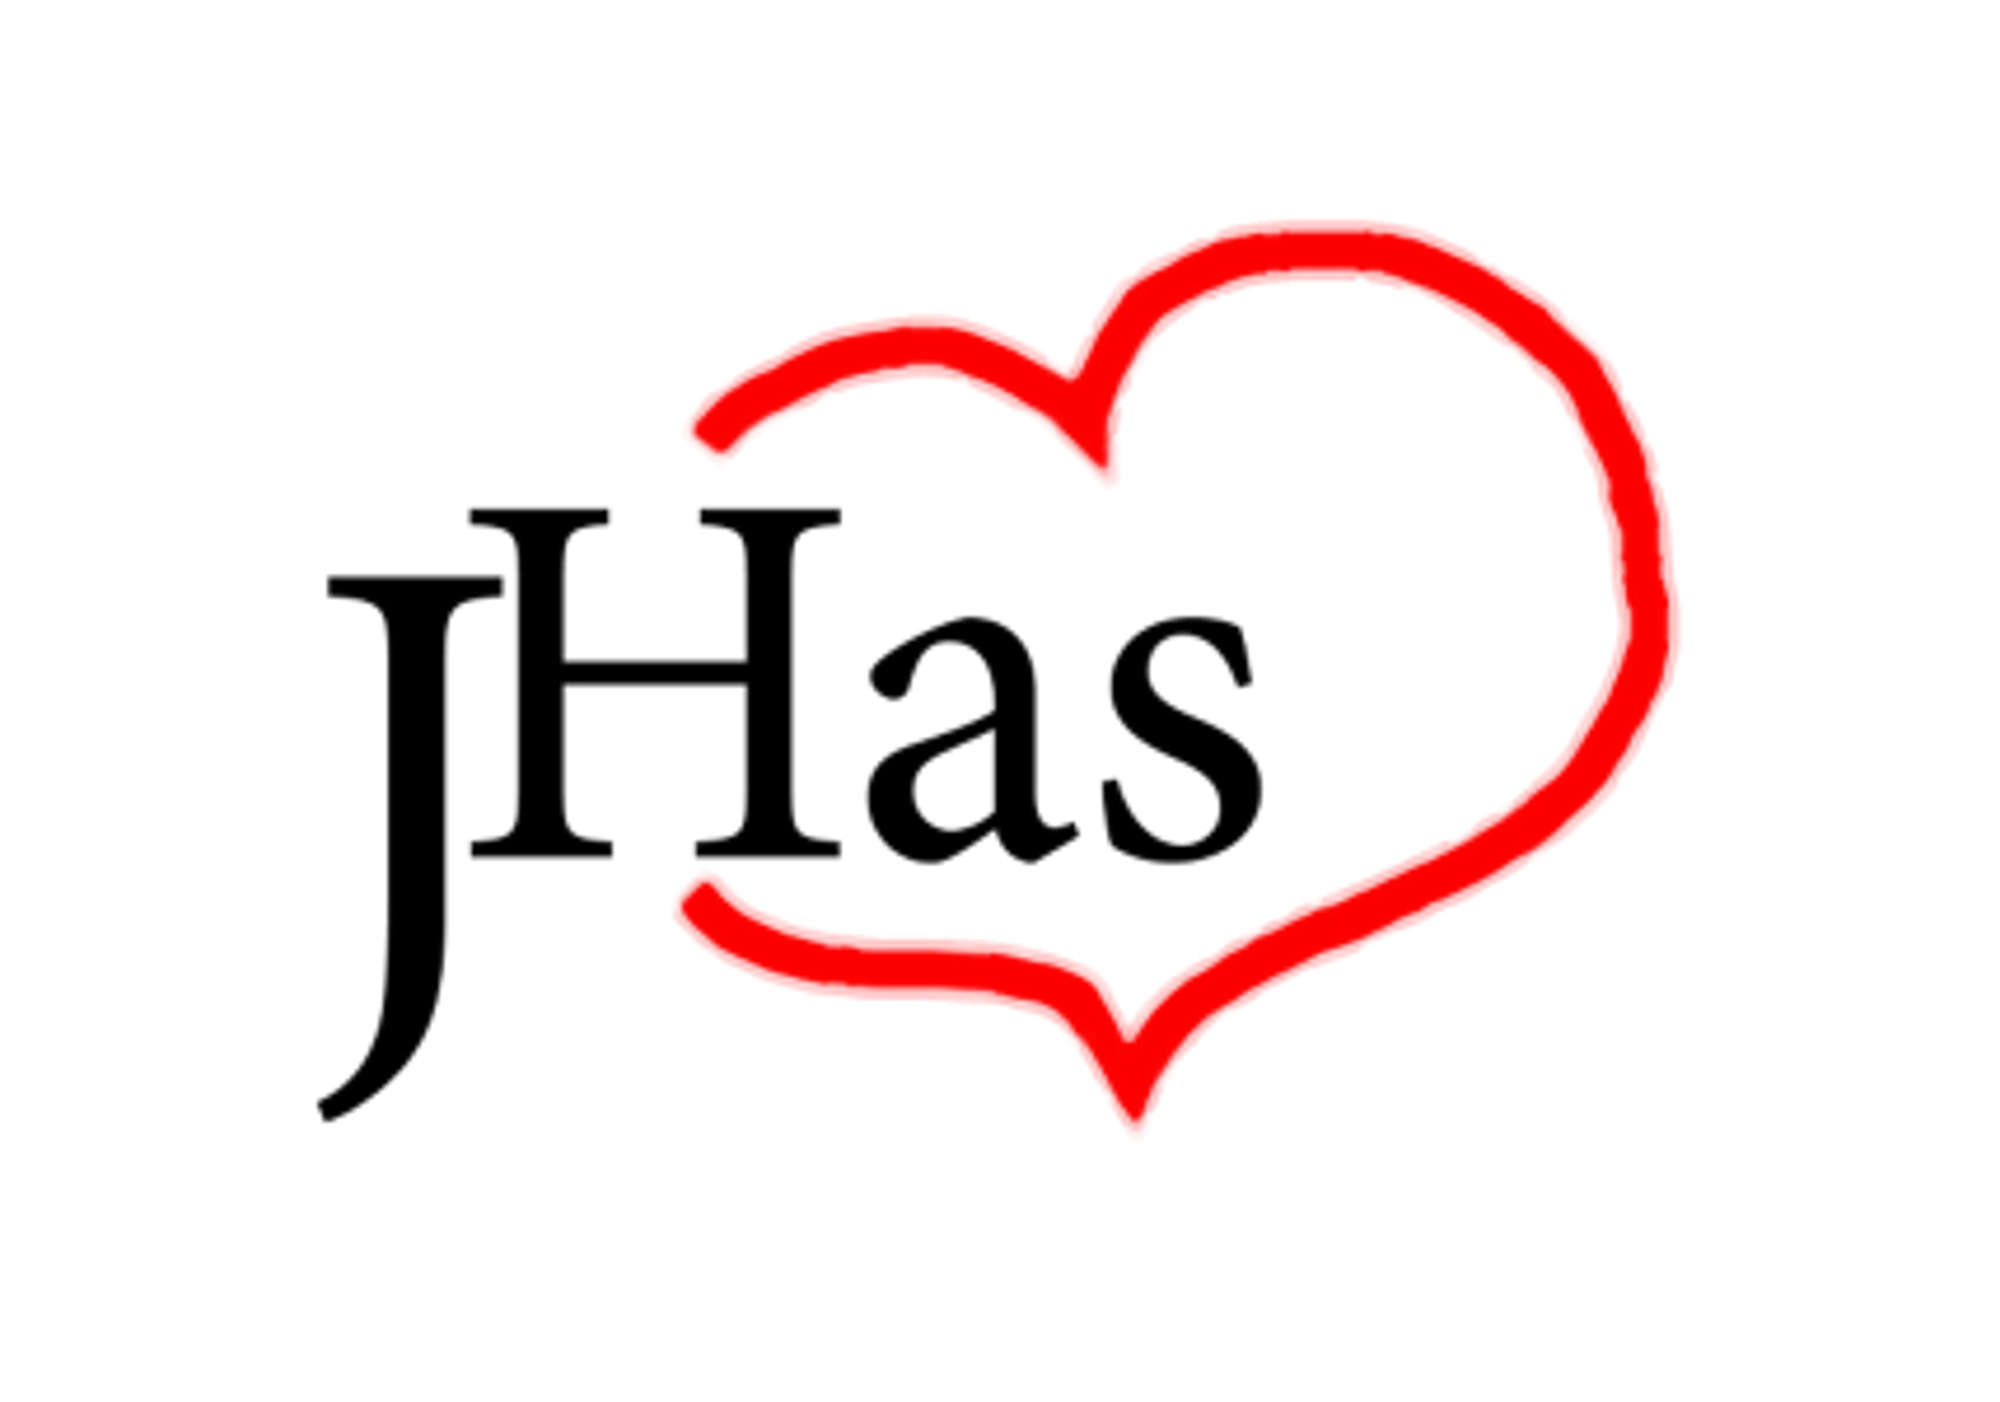 JhasHeart